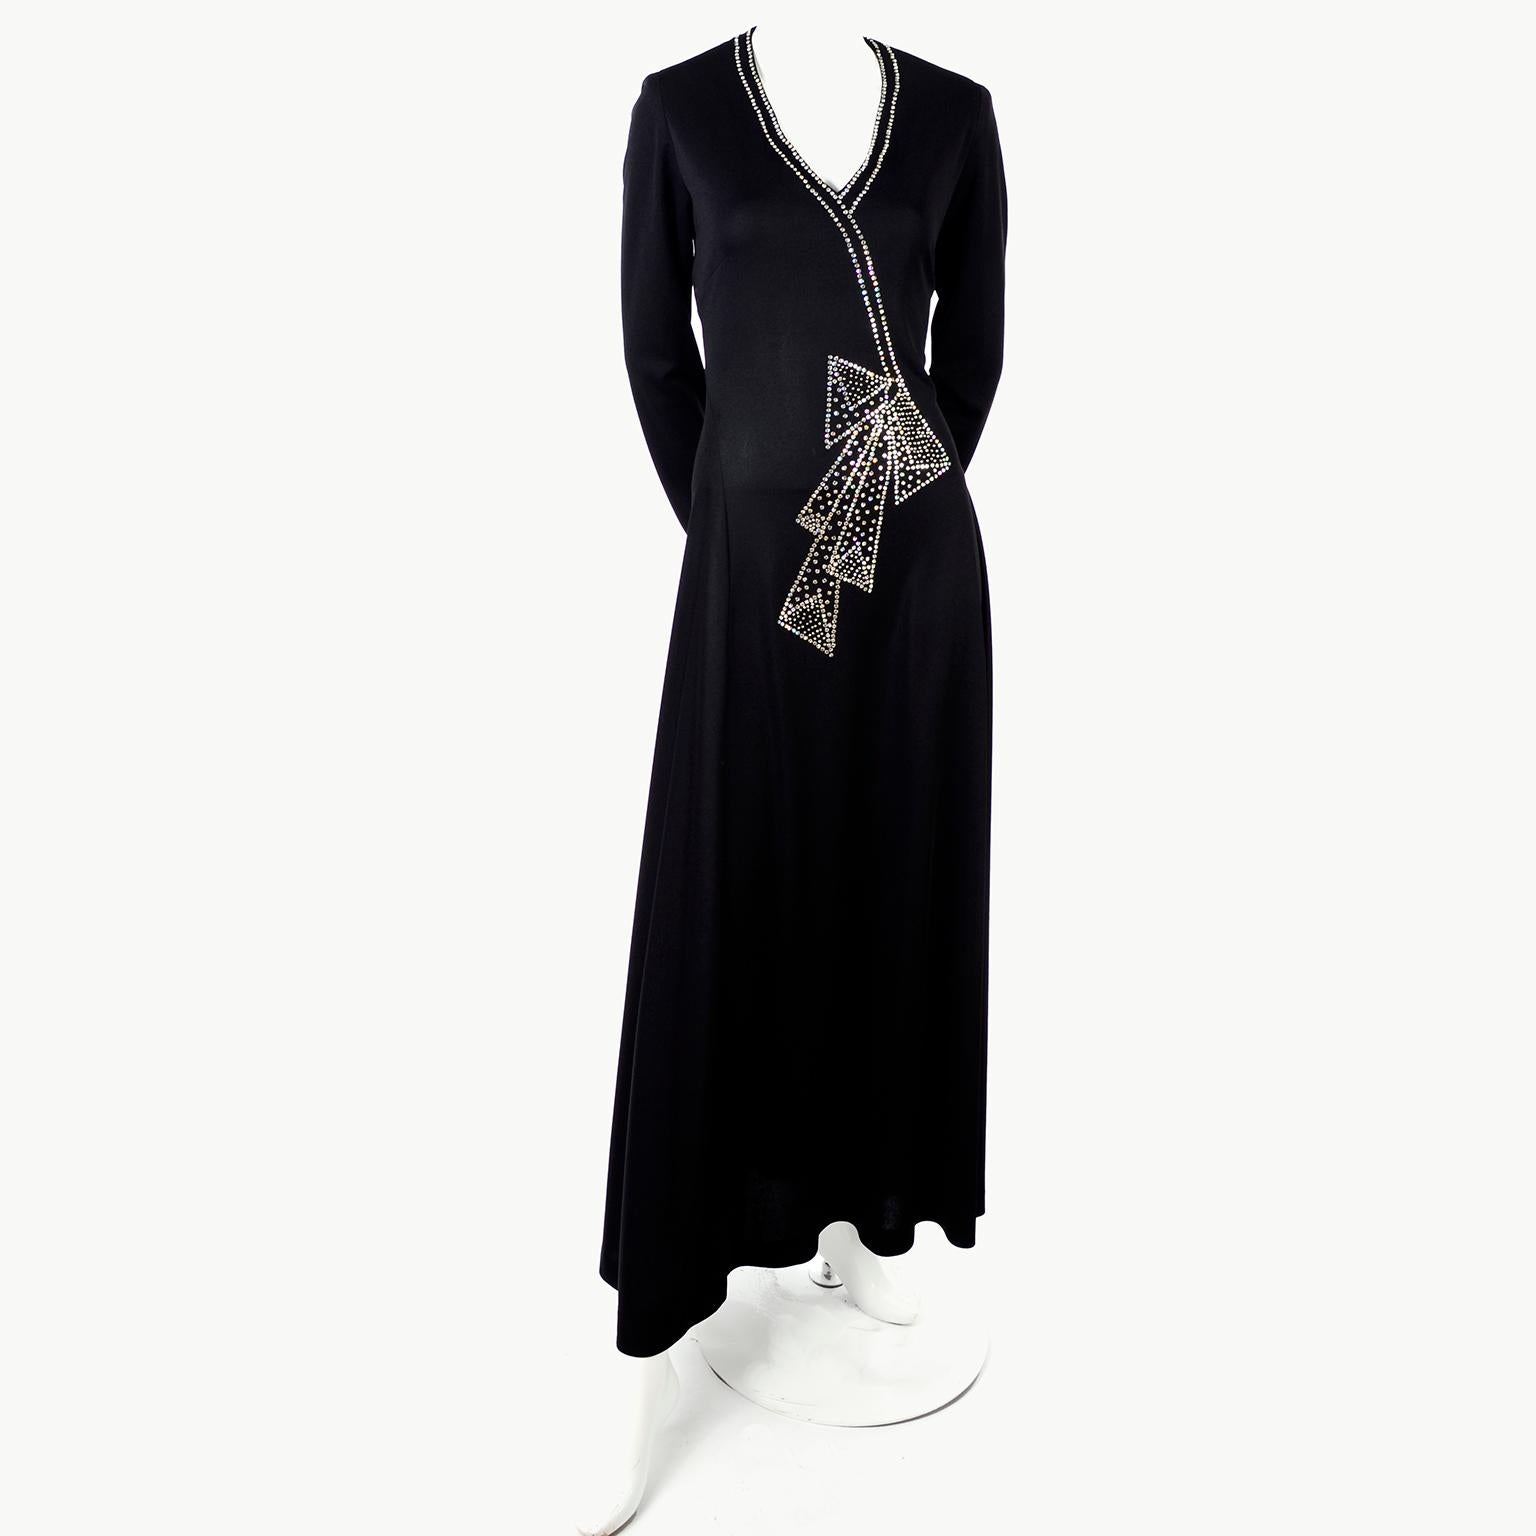 Rosalee 1960er Jahre Brooklyn Boutique Vintage schwarzes Kleid Trompe L'oeil Strass Schleife Damen